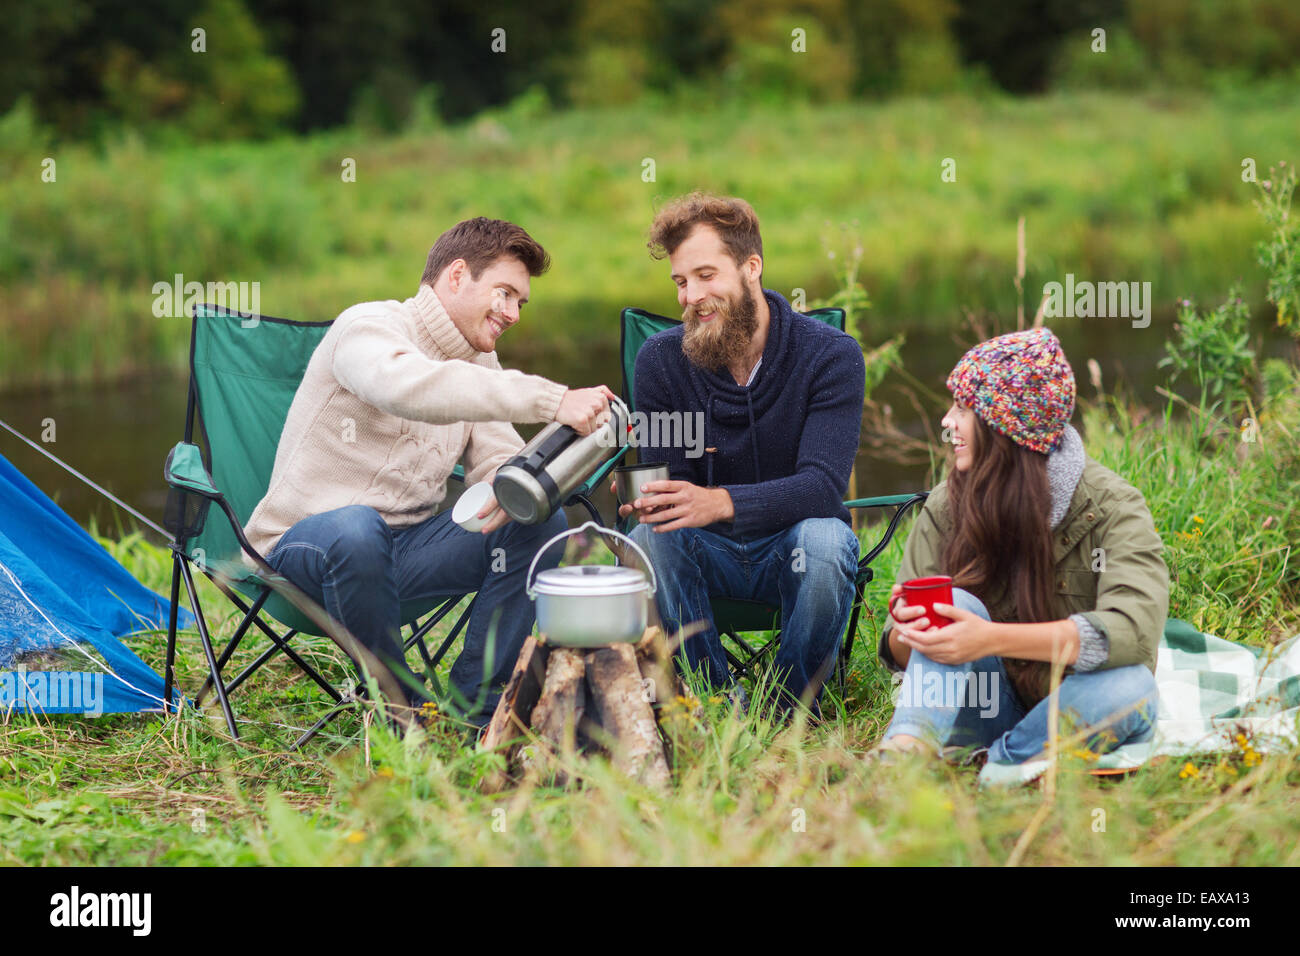 Groupe de touristes souriants la cuisson des aliments dans camping Banque D'Images